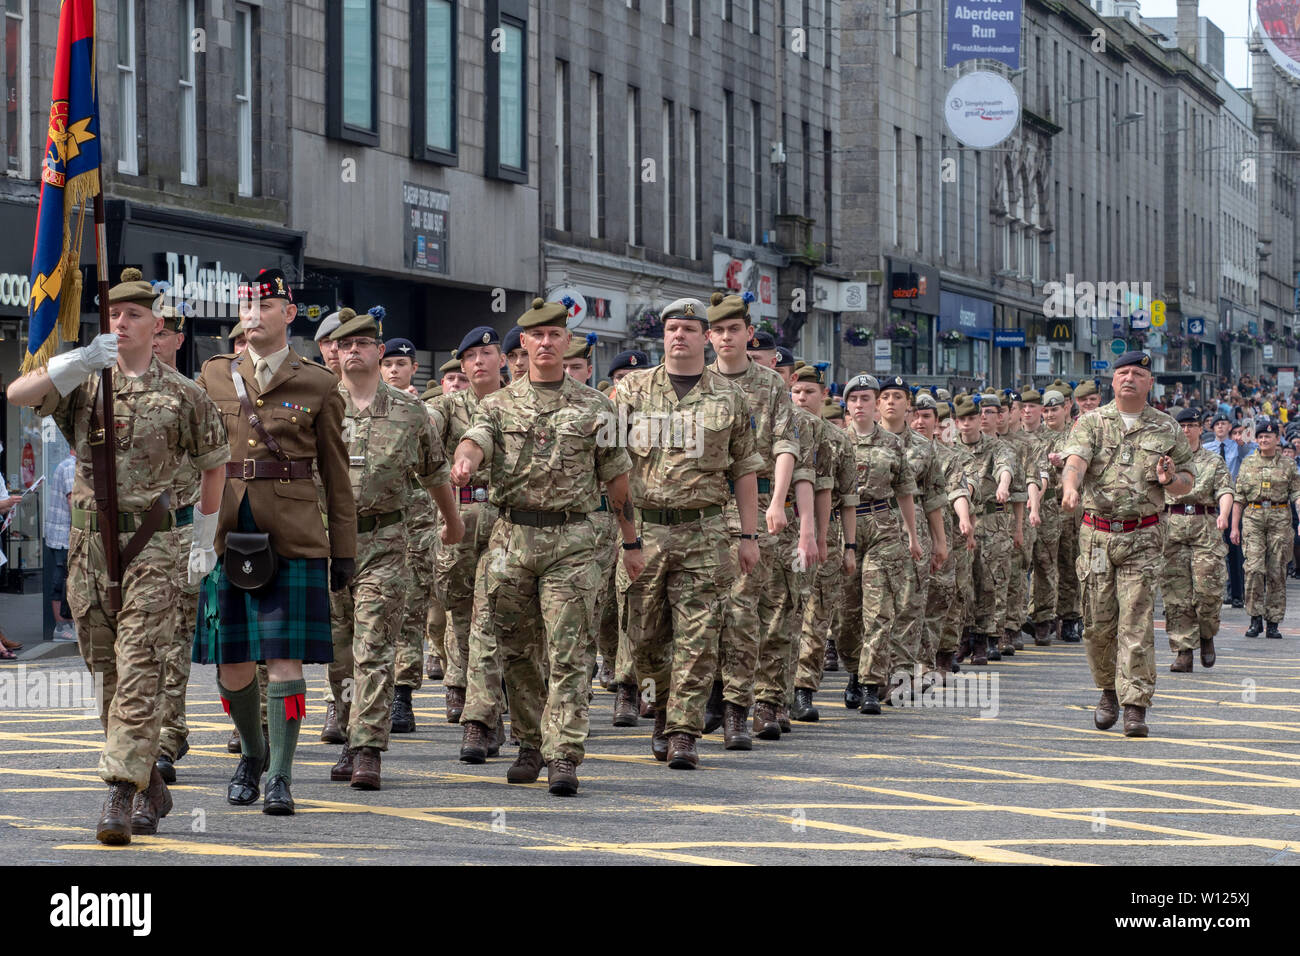 Aberdeen, Escocia - Junio 29th, 2019: personal militar, veteranos y cadetes desfilando en Union Street, Aberdeen, para marcar el Día de las Fuerzas Armadas en el Reino Unido. Foto de stock